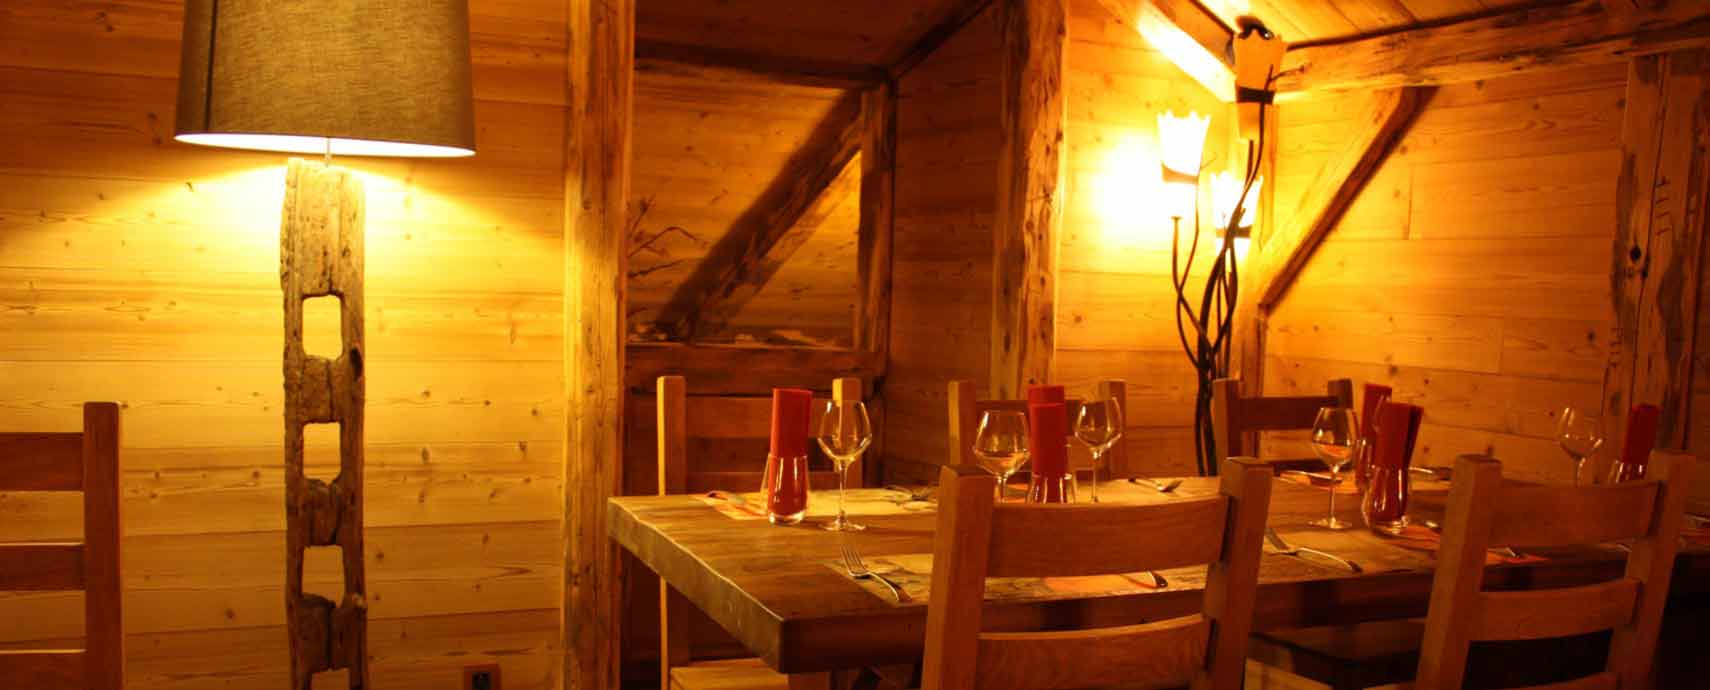 Tables du restaurant La Grange à Besançon, spécialiste de fondues suisses et savoyardes